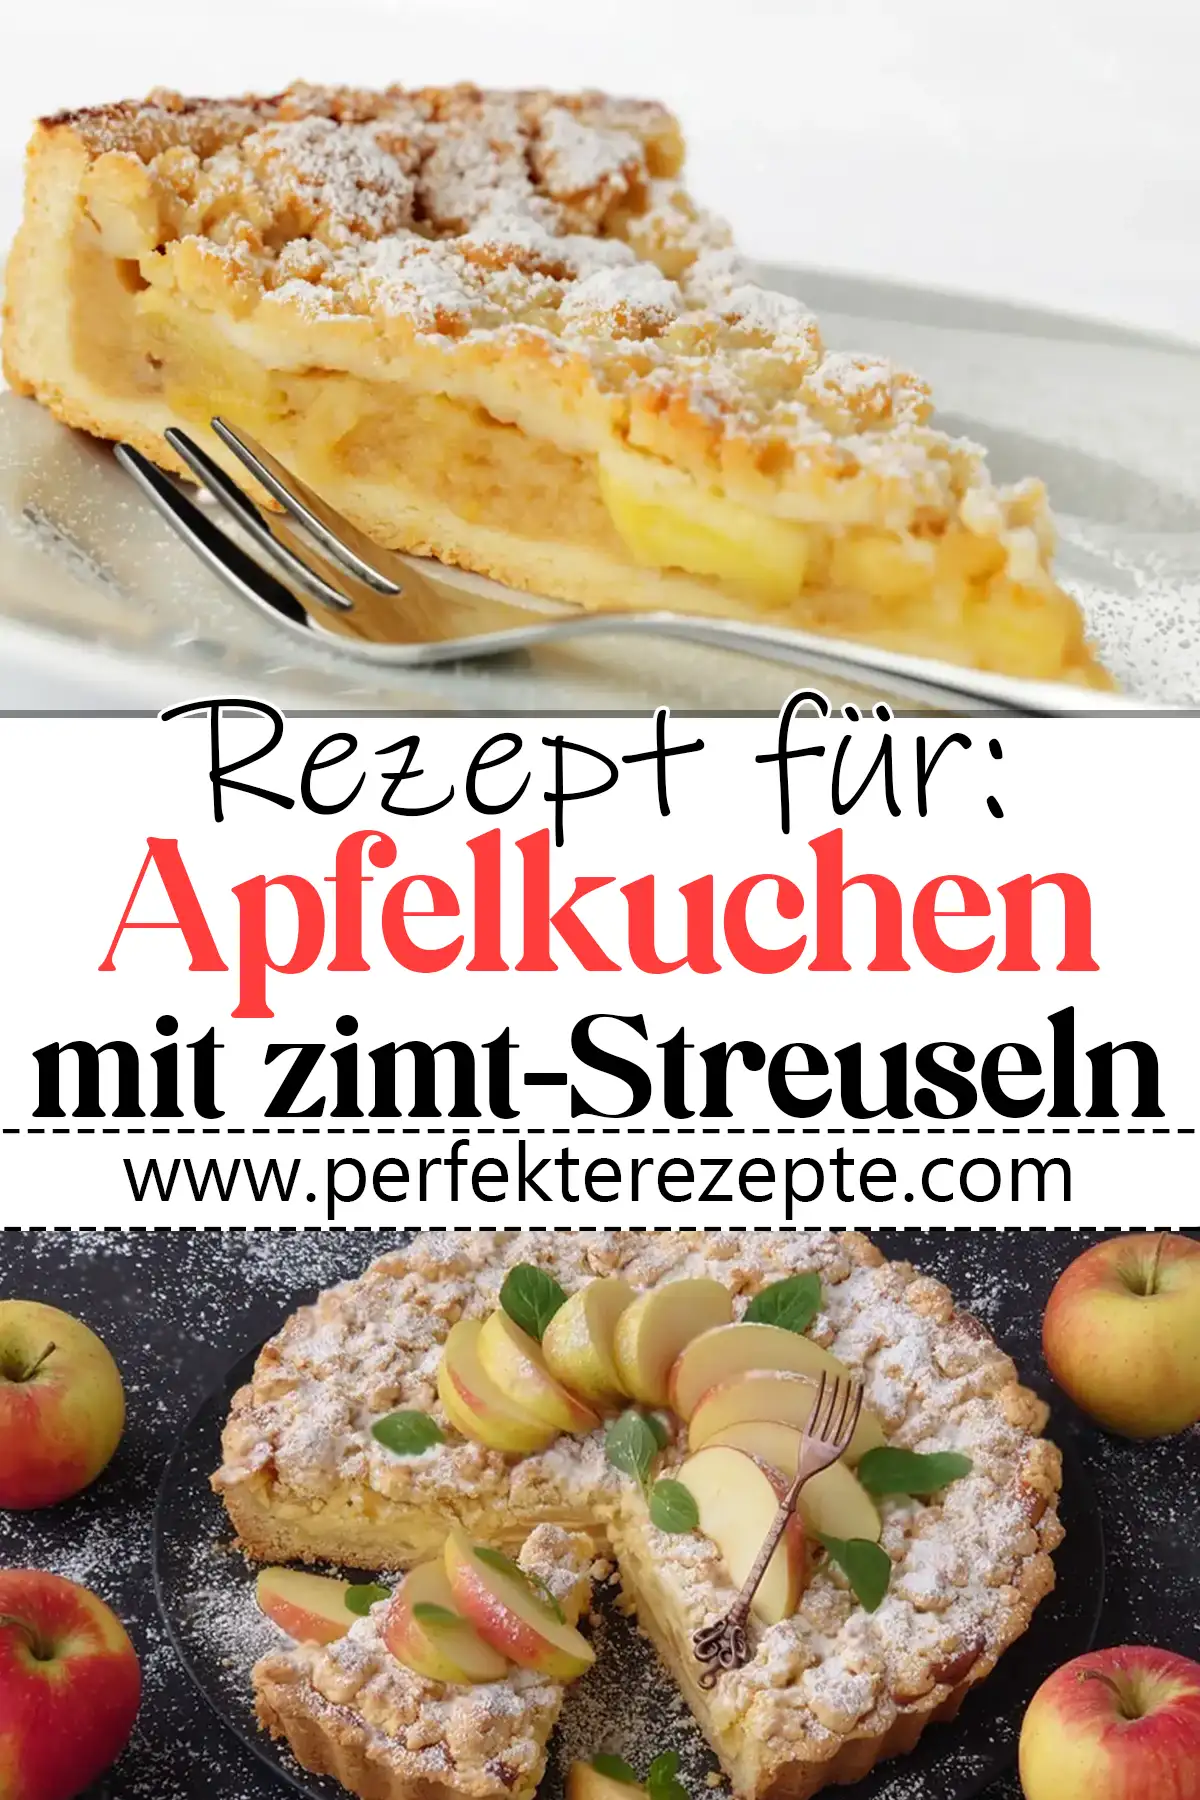 Apfelkuchen mit Zimt-Streuseln Rezept